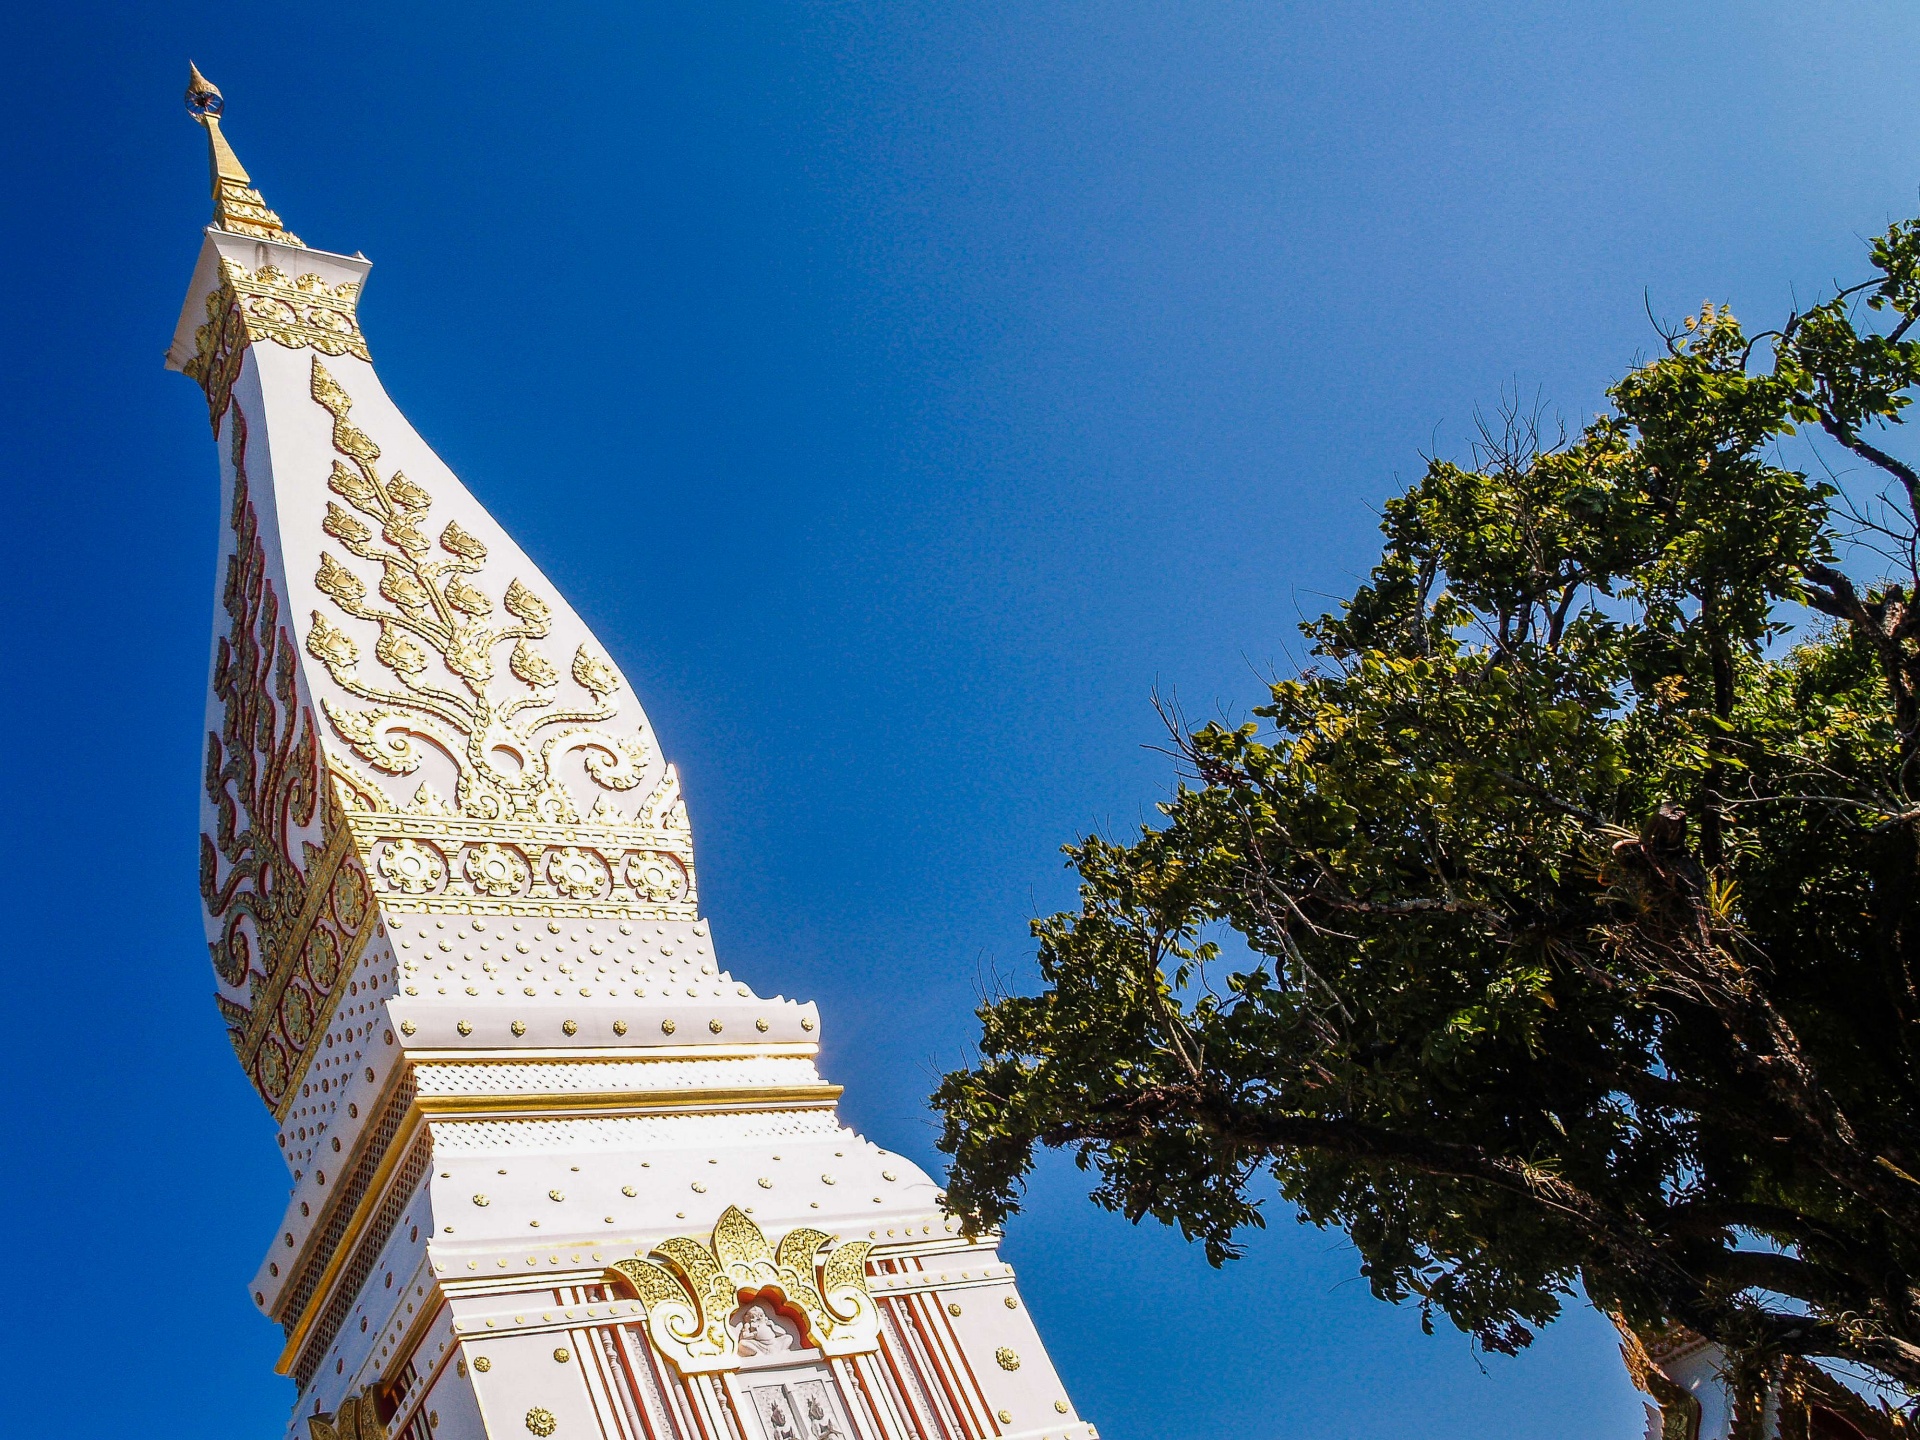 Templo de Wat Phra That Panom